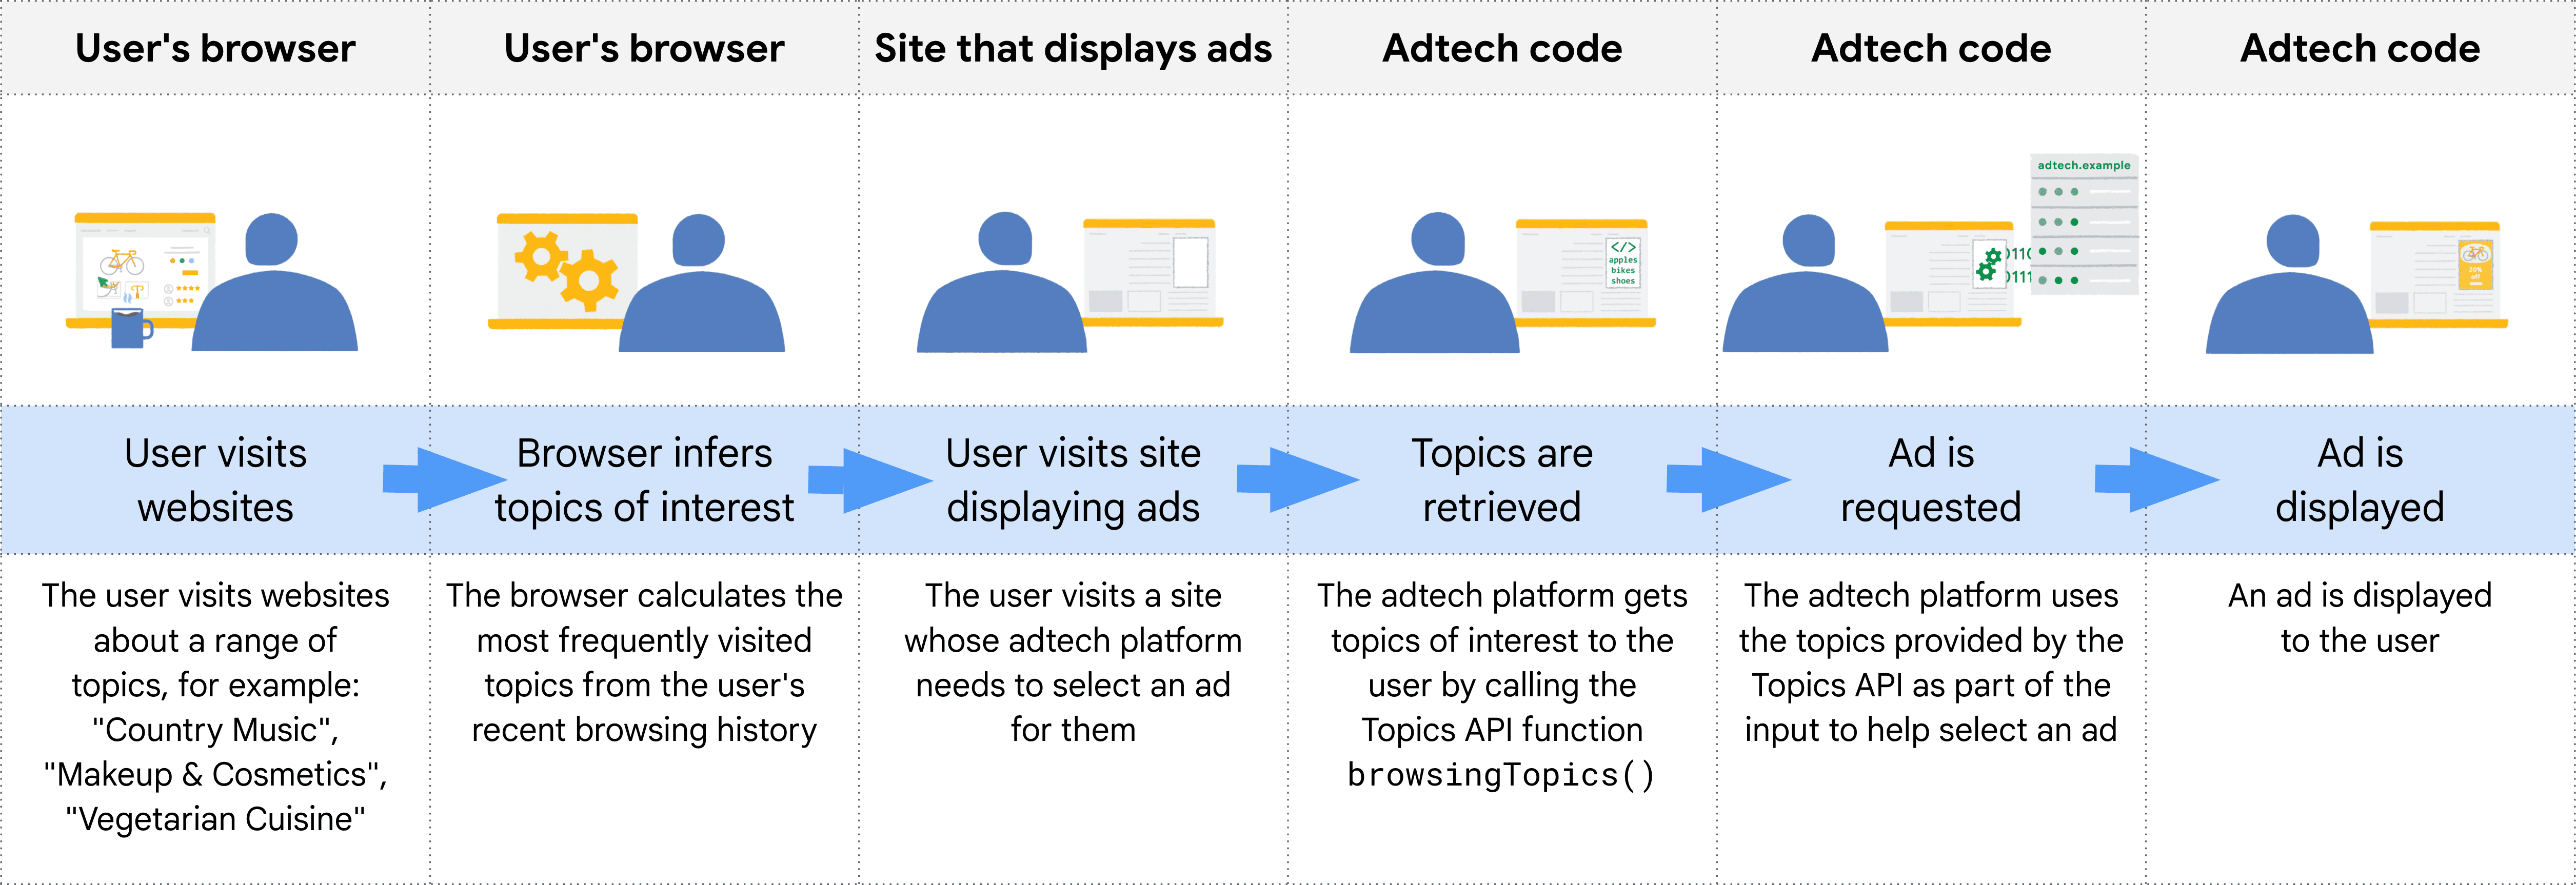 نموداری که مراحل چرخه عمر Topics API را نشان می دهد، از بازدید کاربر از وب سایت ها تا نمایش آگهی.